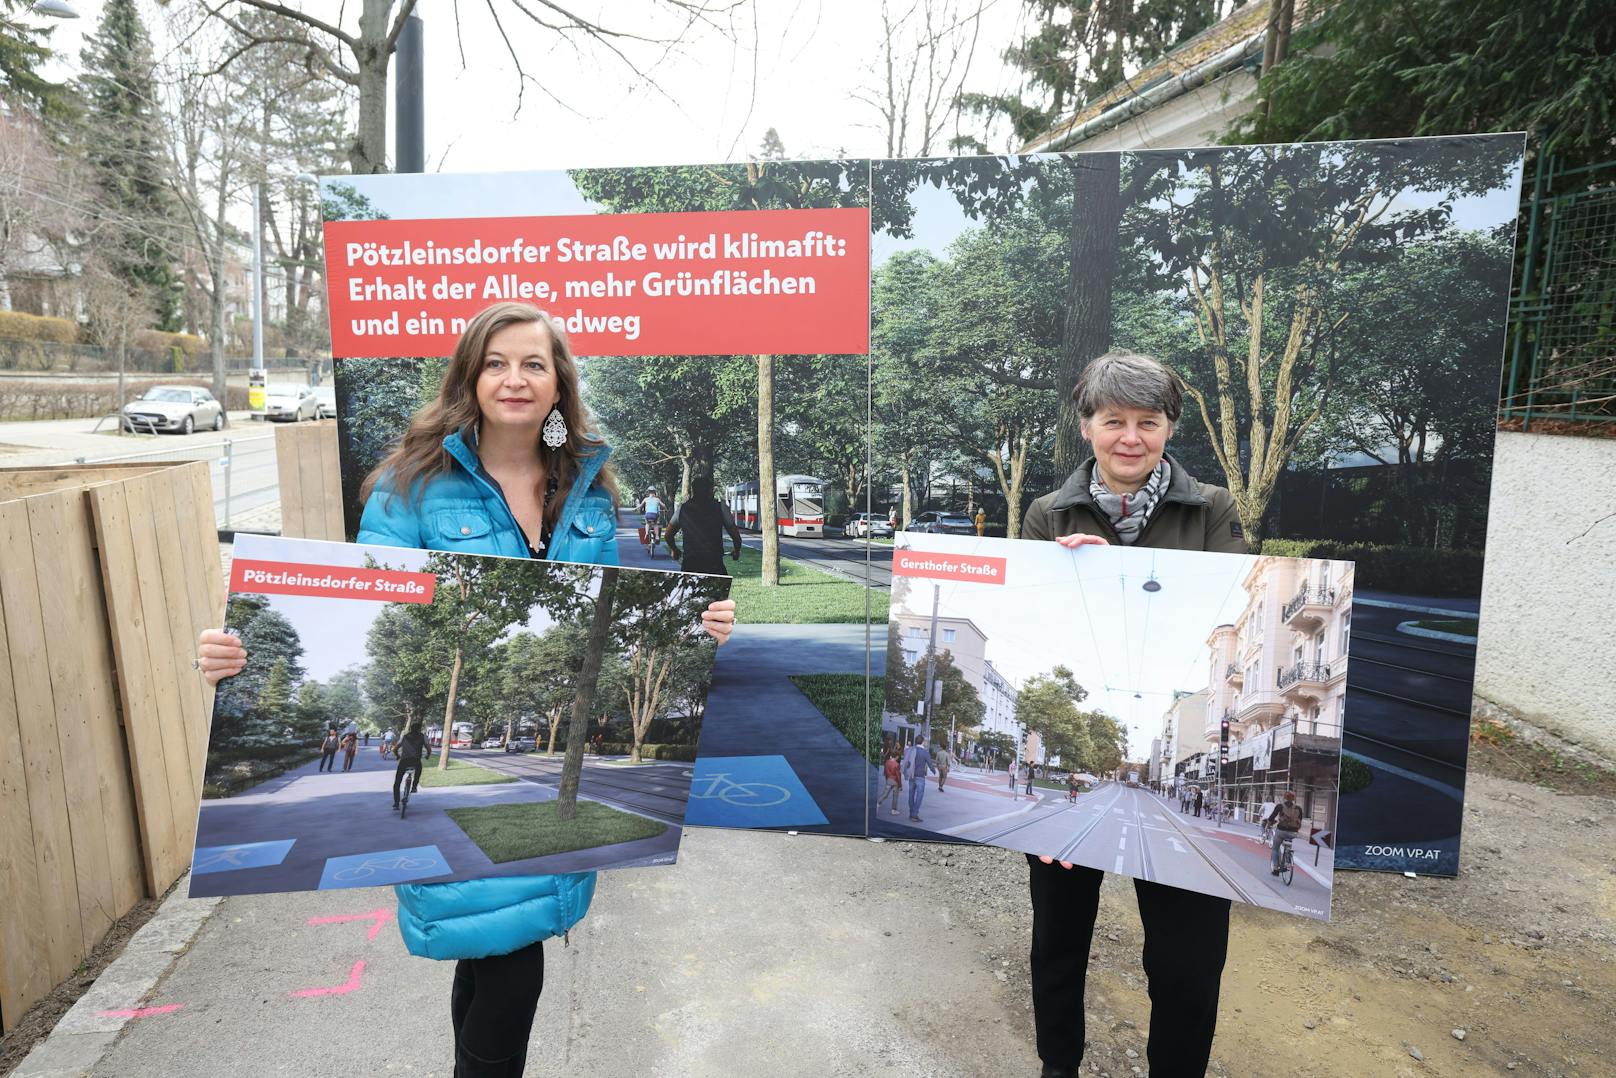 Die Pötzleinsdorfer Straße in Währing soll klimafit werden, sind sich Planungsstadträtin Ulli Sima (SPÖ, l.) und Bezirkschefin Silvia Nossek (G) einig.